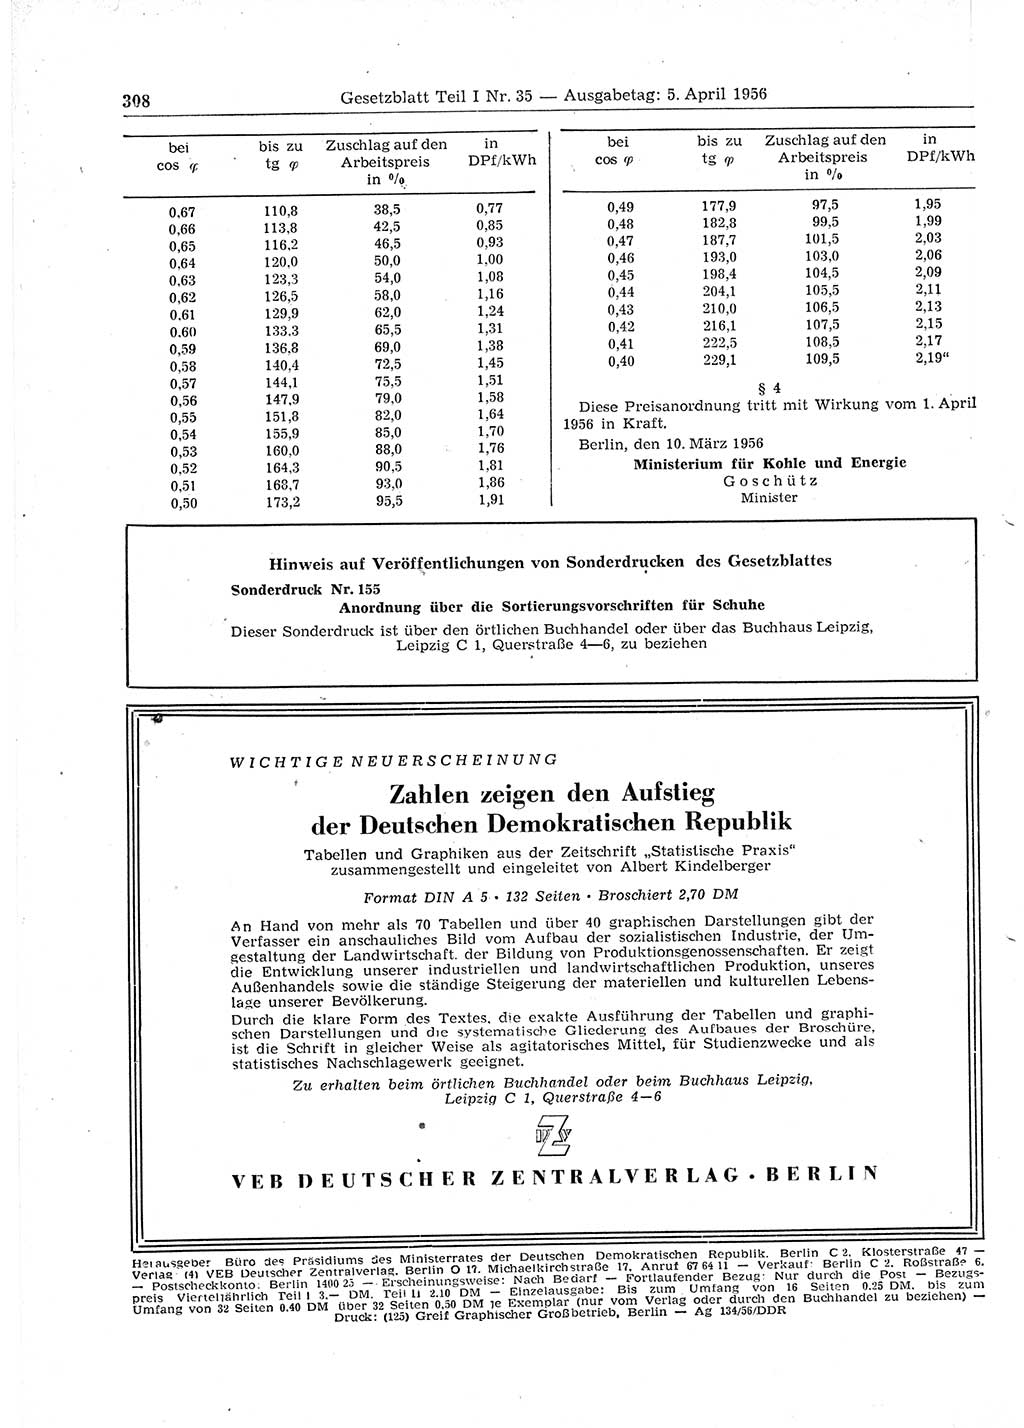 Gesetzblatt (GBl.) der Deutschen Demokratischen Republik (DDR) Teil Ⅰ 1956, Seite 308 (GBl. DDR Ⅰ 1956, S. 308)